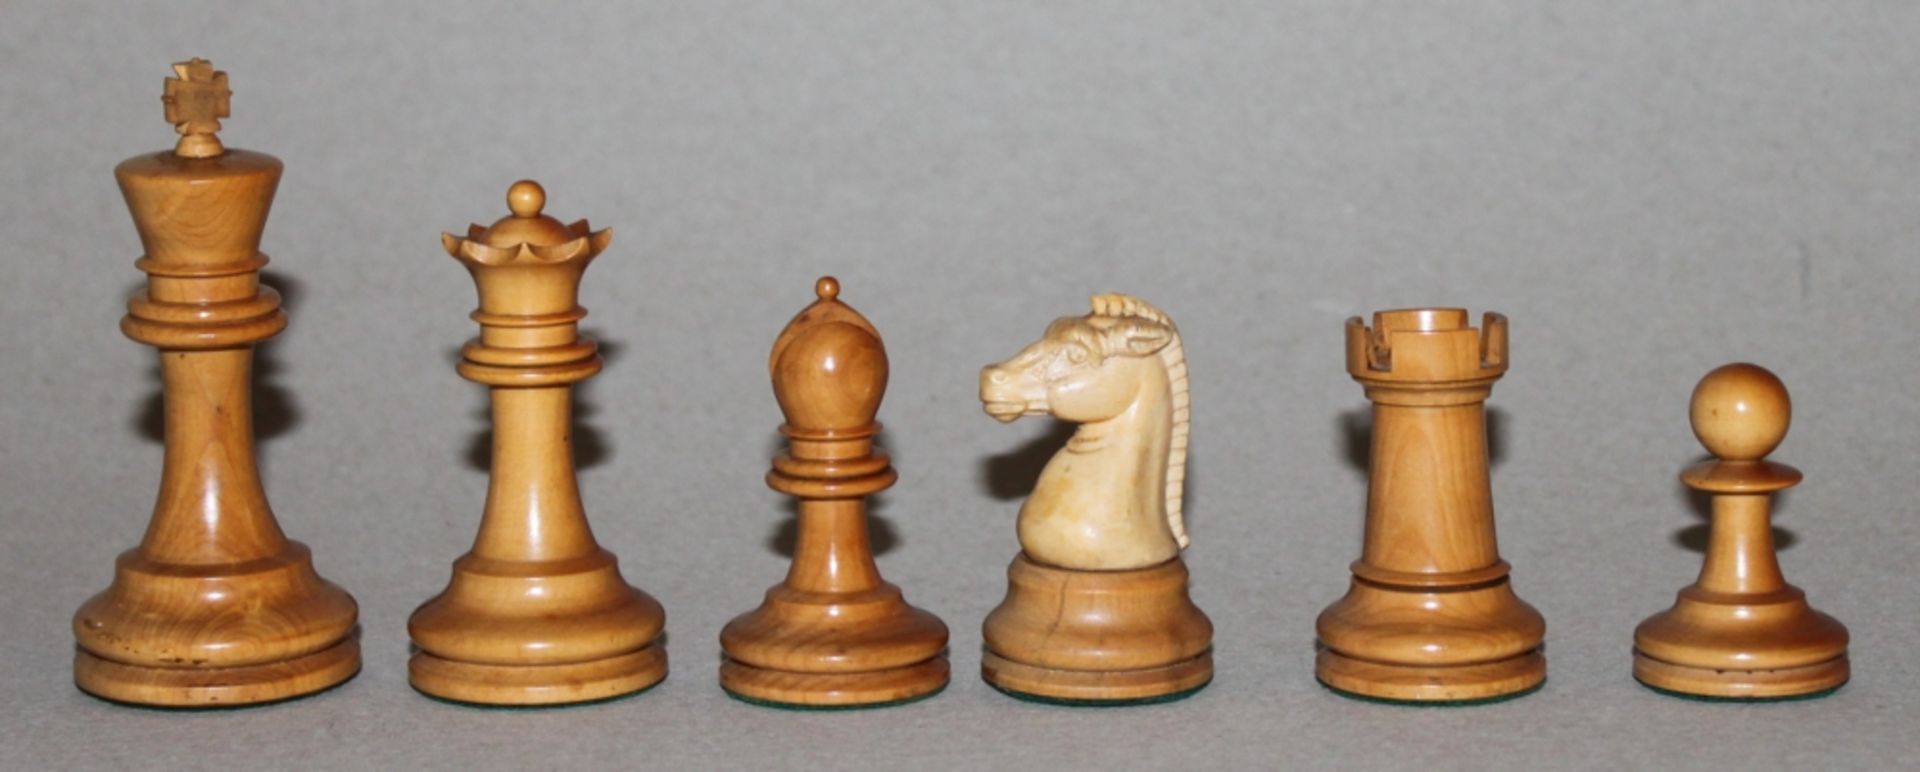 Europa. England. Staunton Schachfiguren aus Holz - Bild 2 aus 5